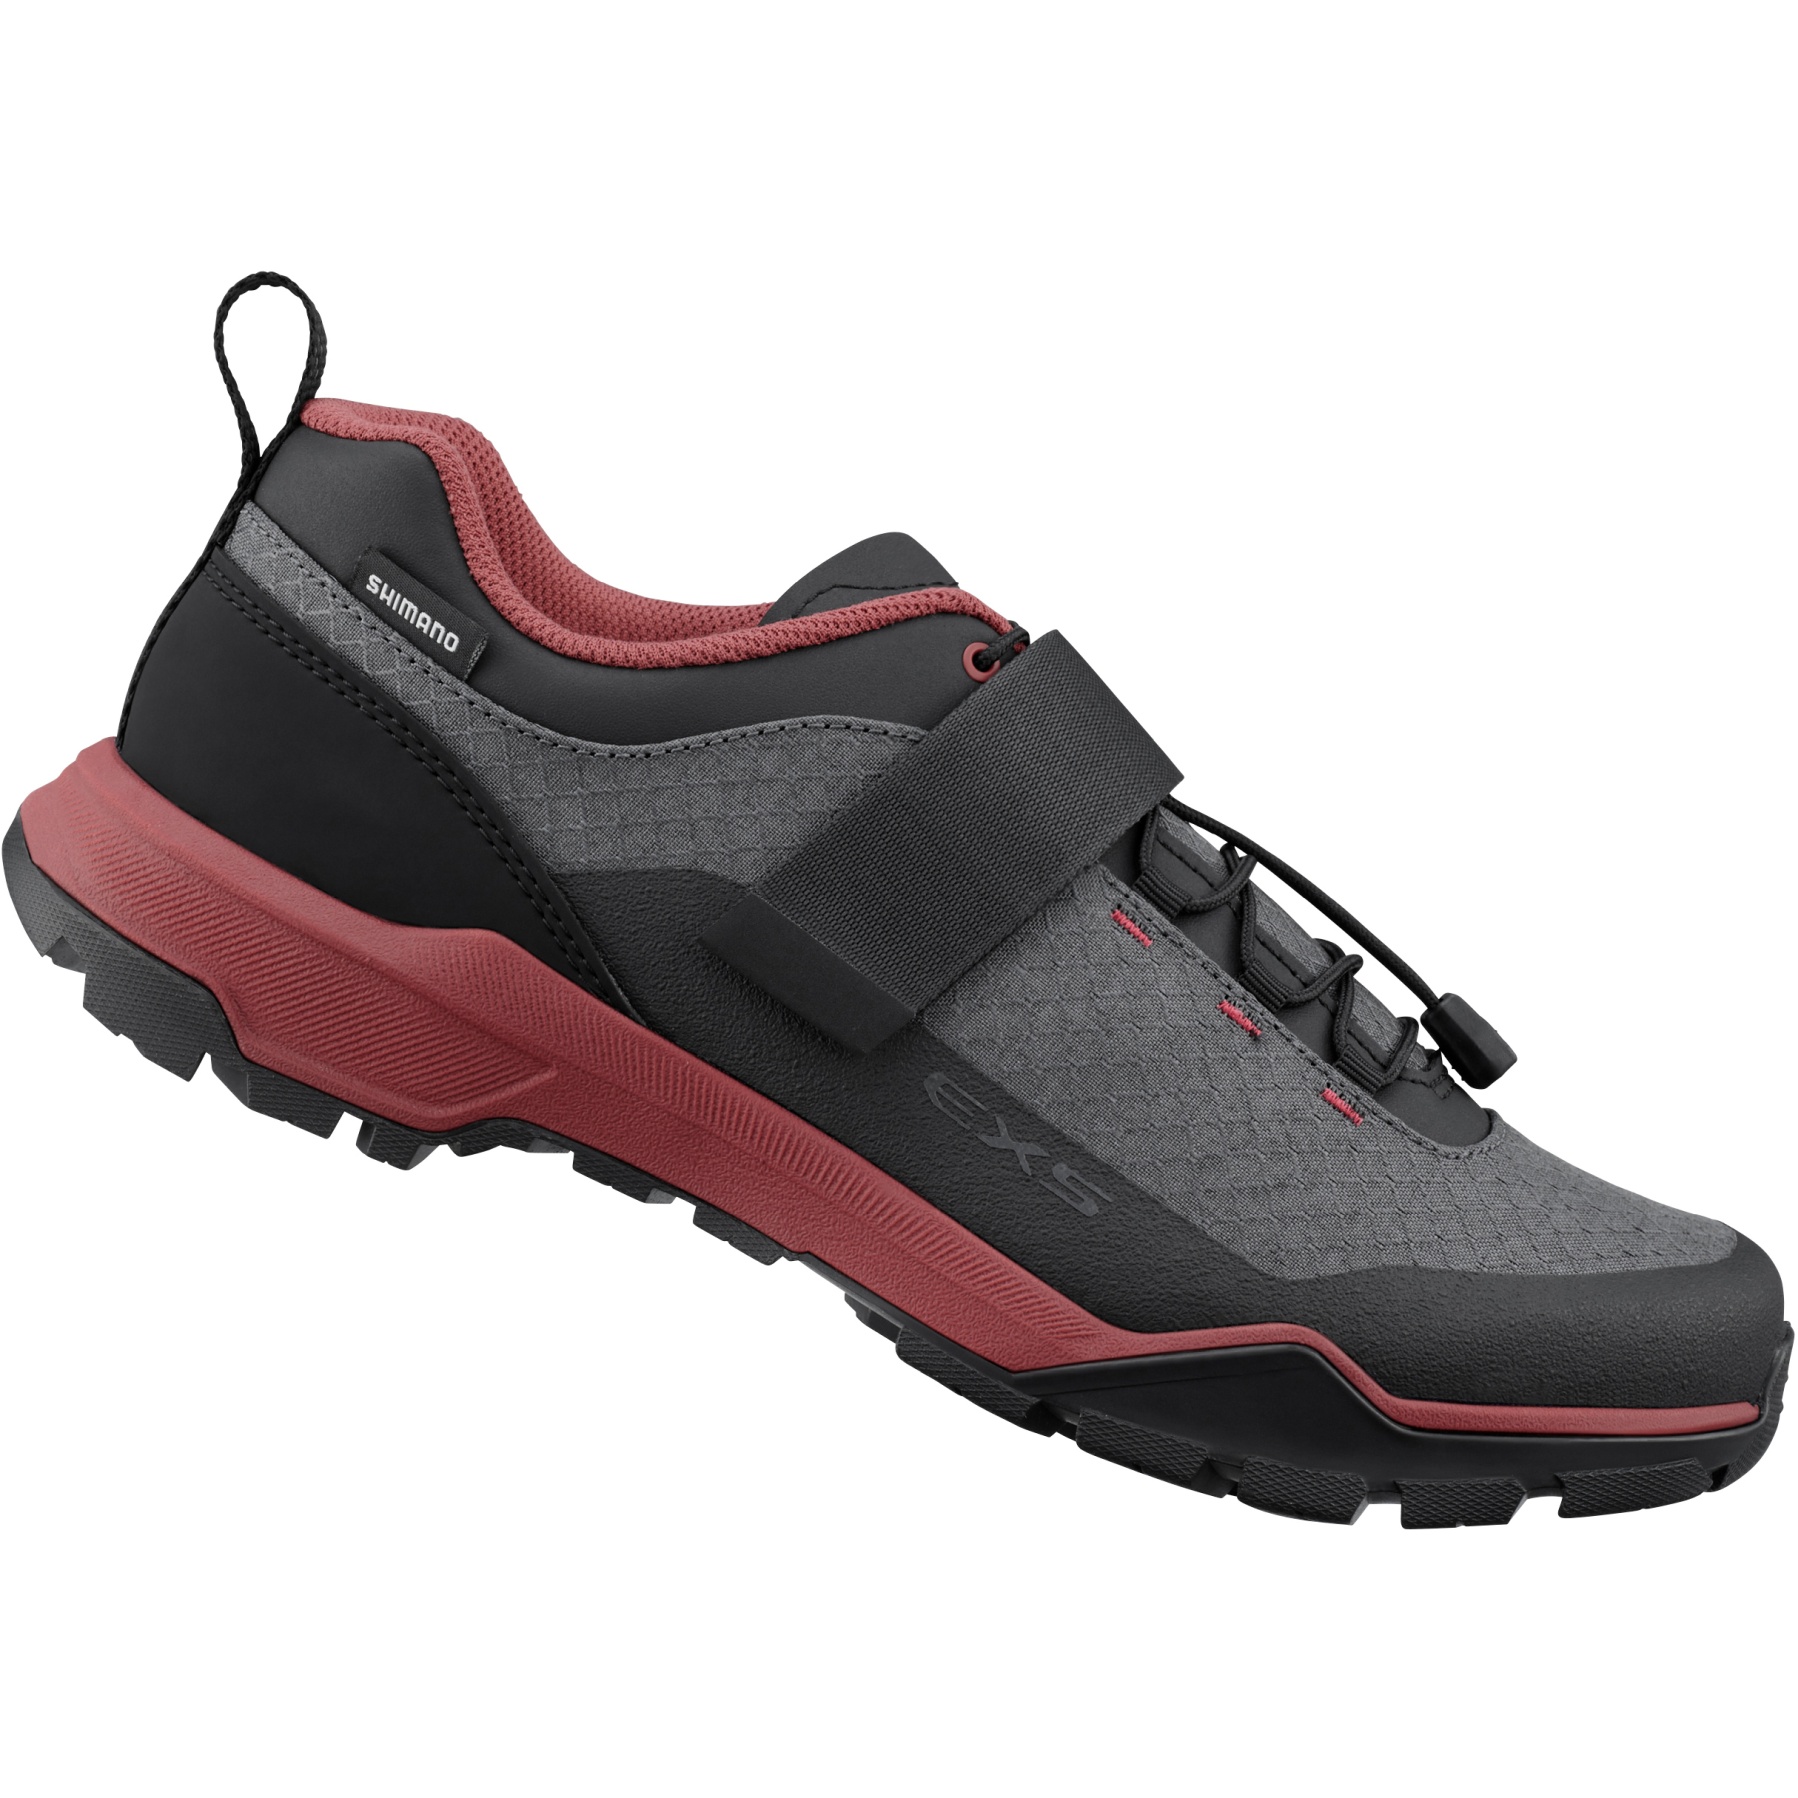 Zapatillas Shimano MT5 - Unas zapatillas de mountain bike cómodas 